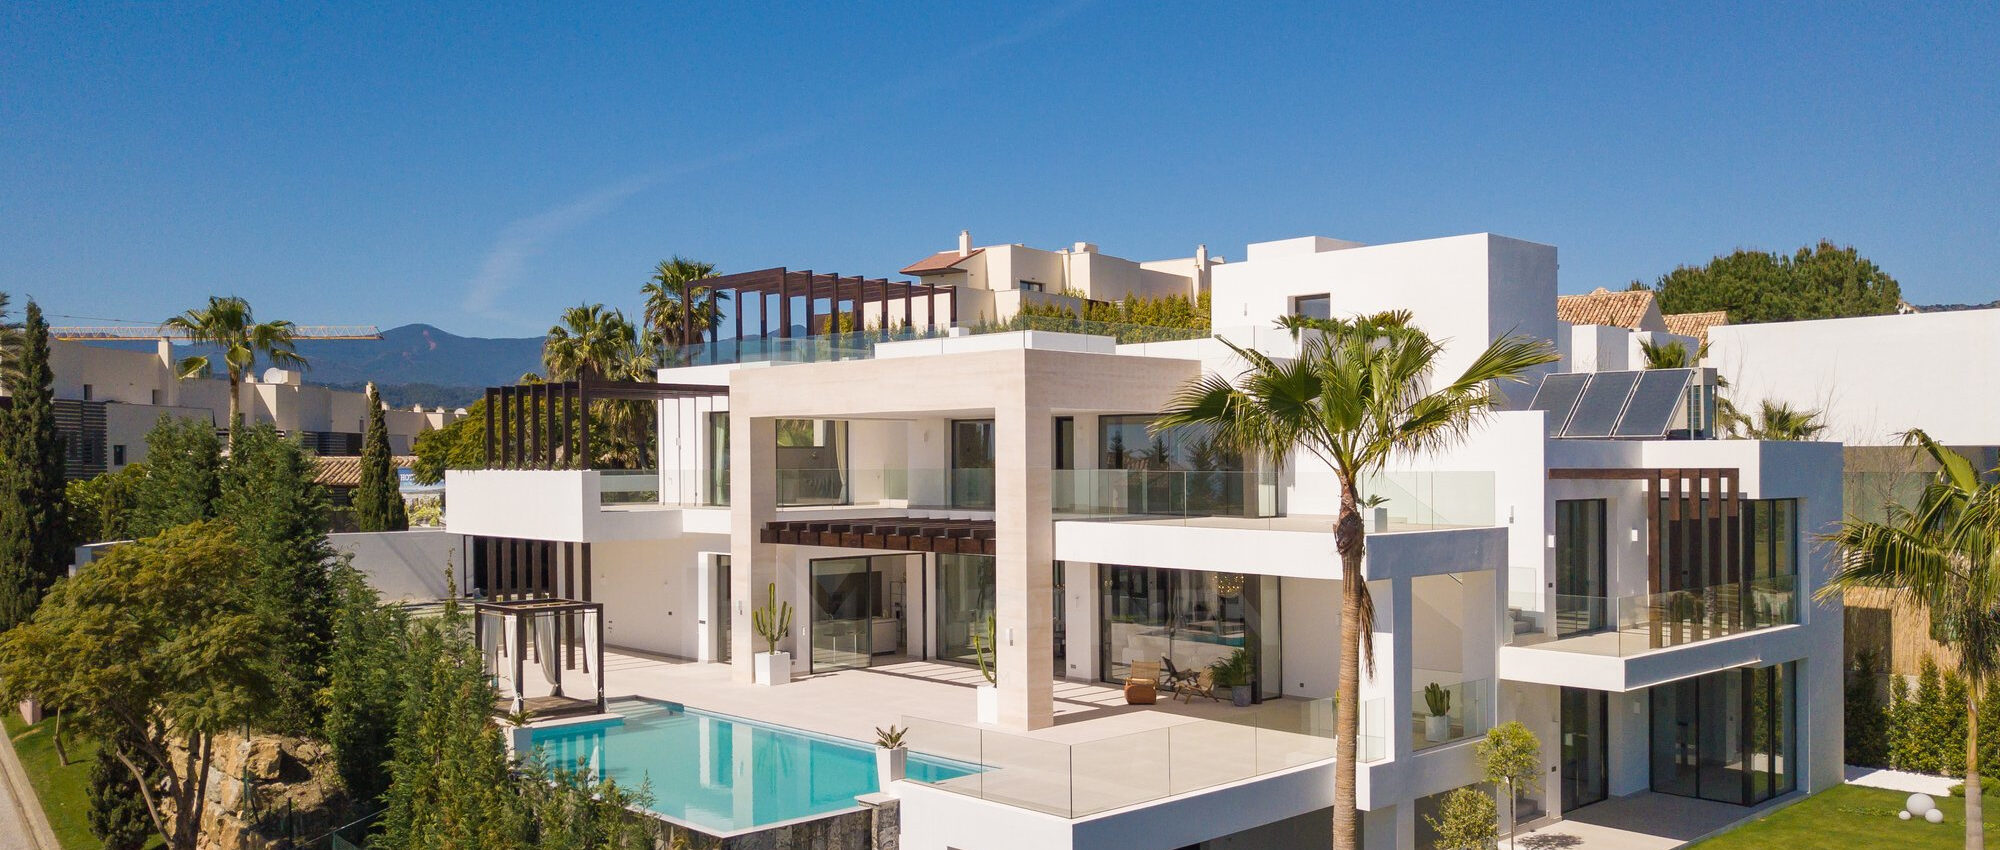 Fantastische moderne Villa mit spektakulärem Meerblick